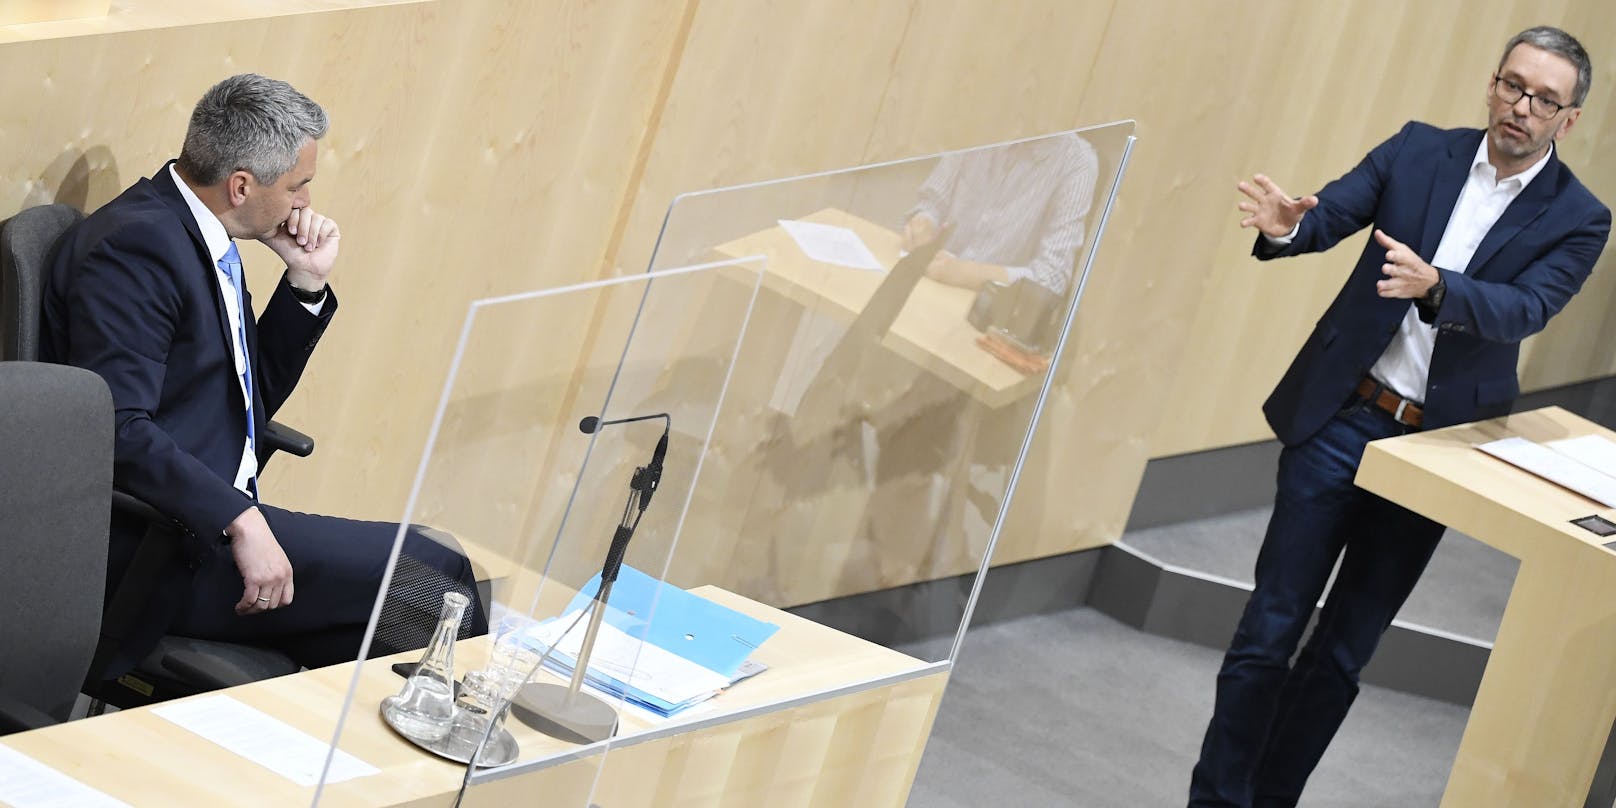 Innenminister Karl Nehammer und FPÖ-Klubobmann Herbert Kickl (R.) während der Aktuellen Stunde im Rahmen einer Sitzung des Nationalrates am Dienstag, 7. Juli 2020